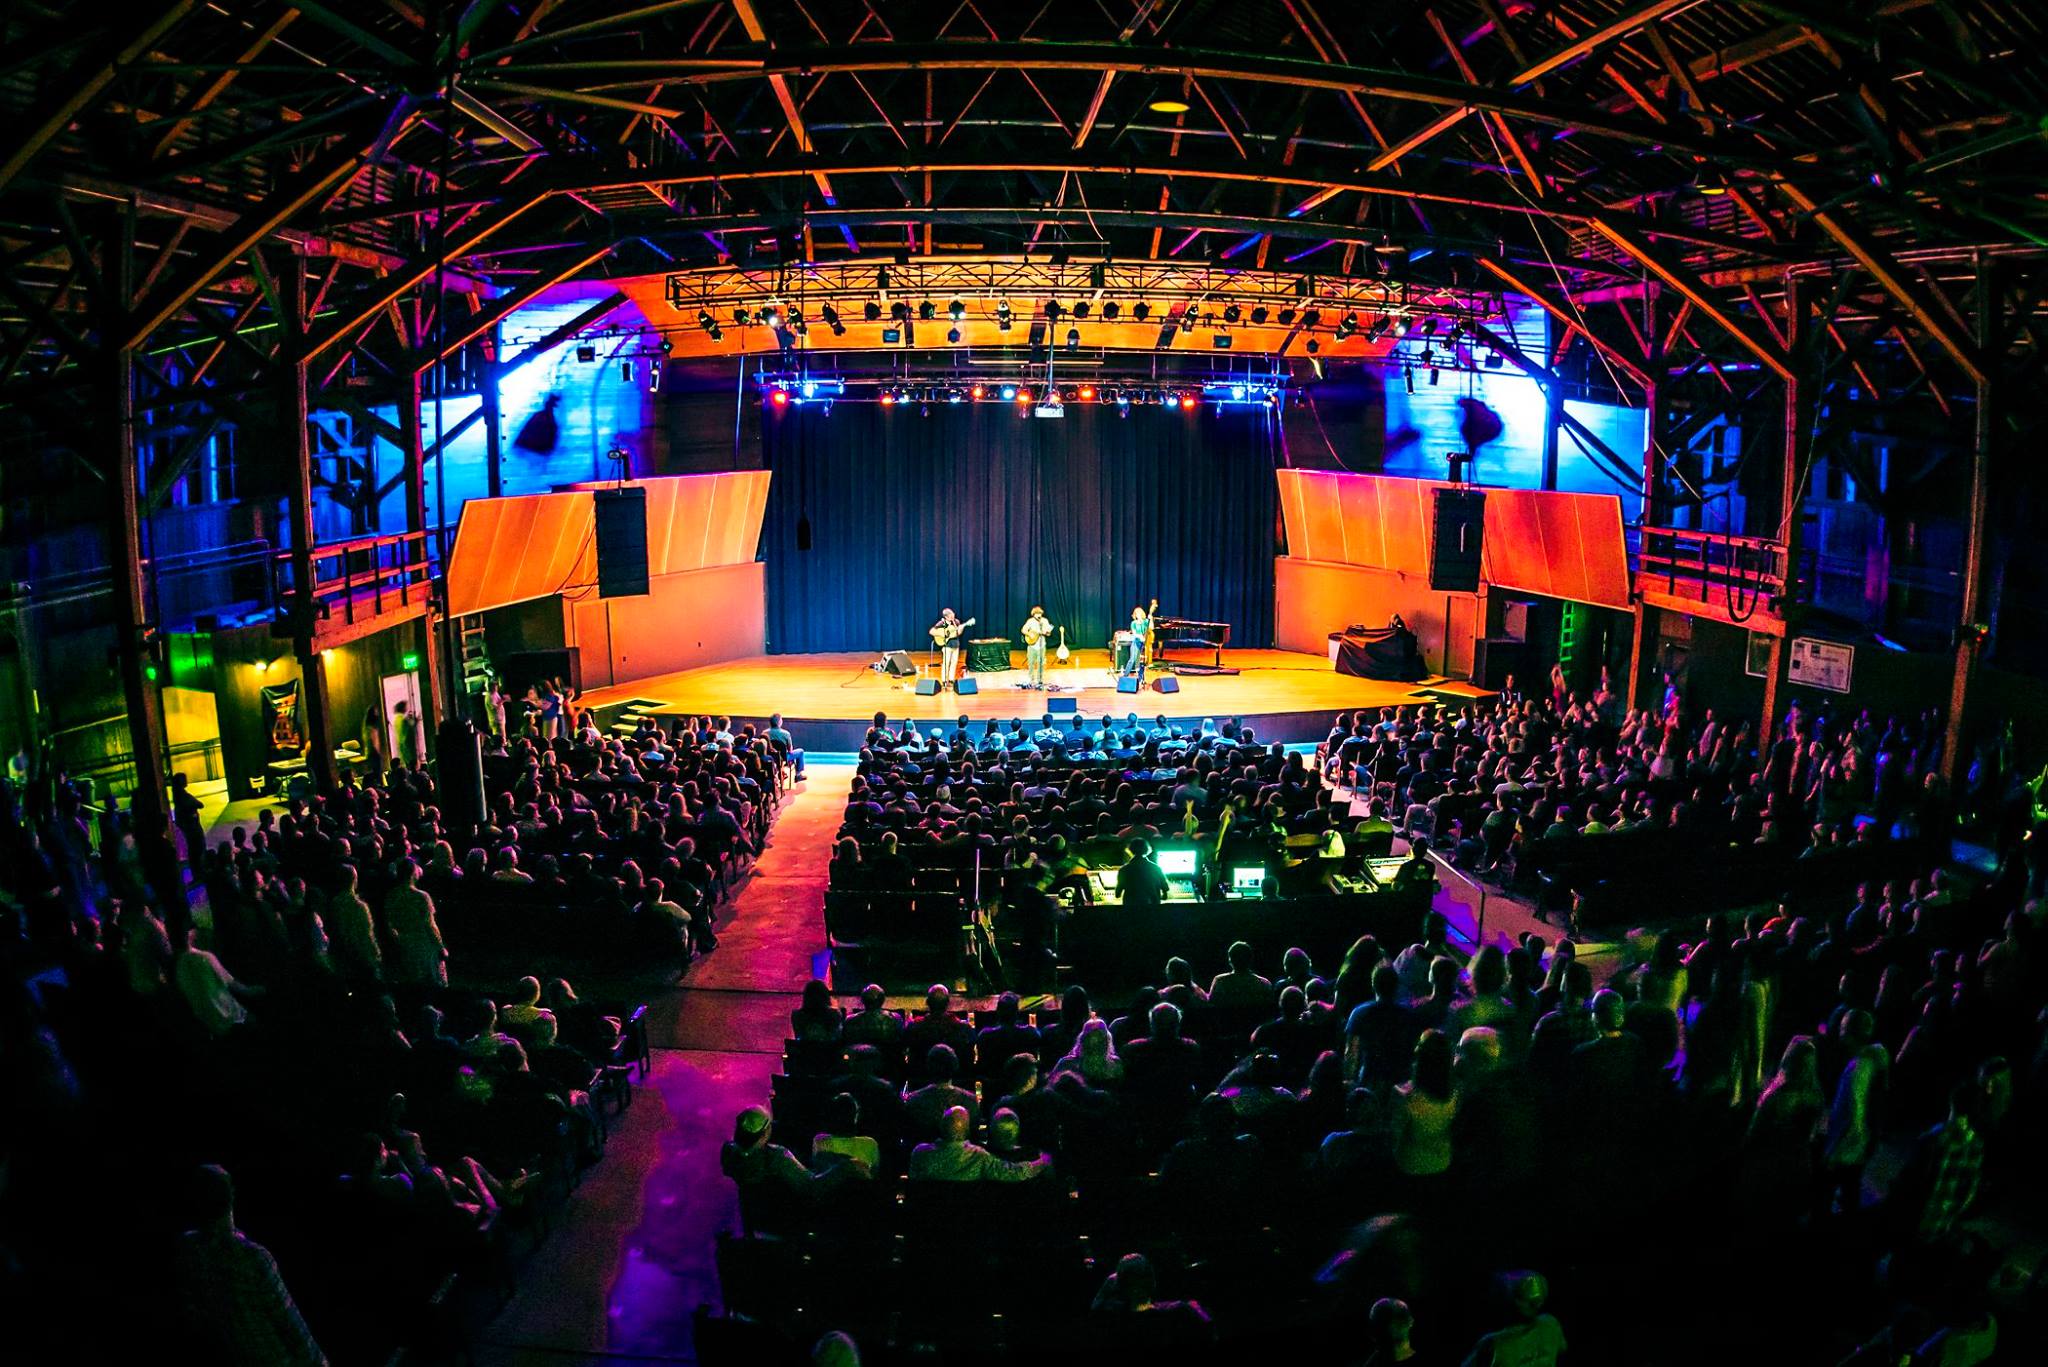 Evening concert in Chautauqua Auditorium with lights